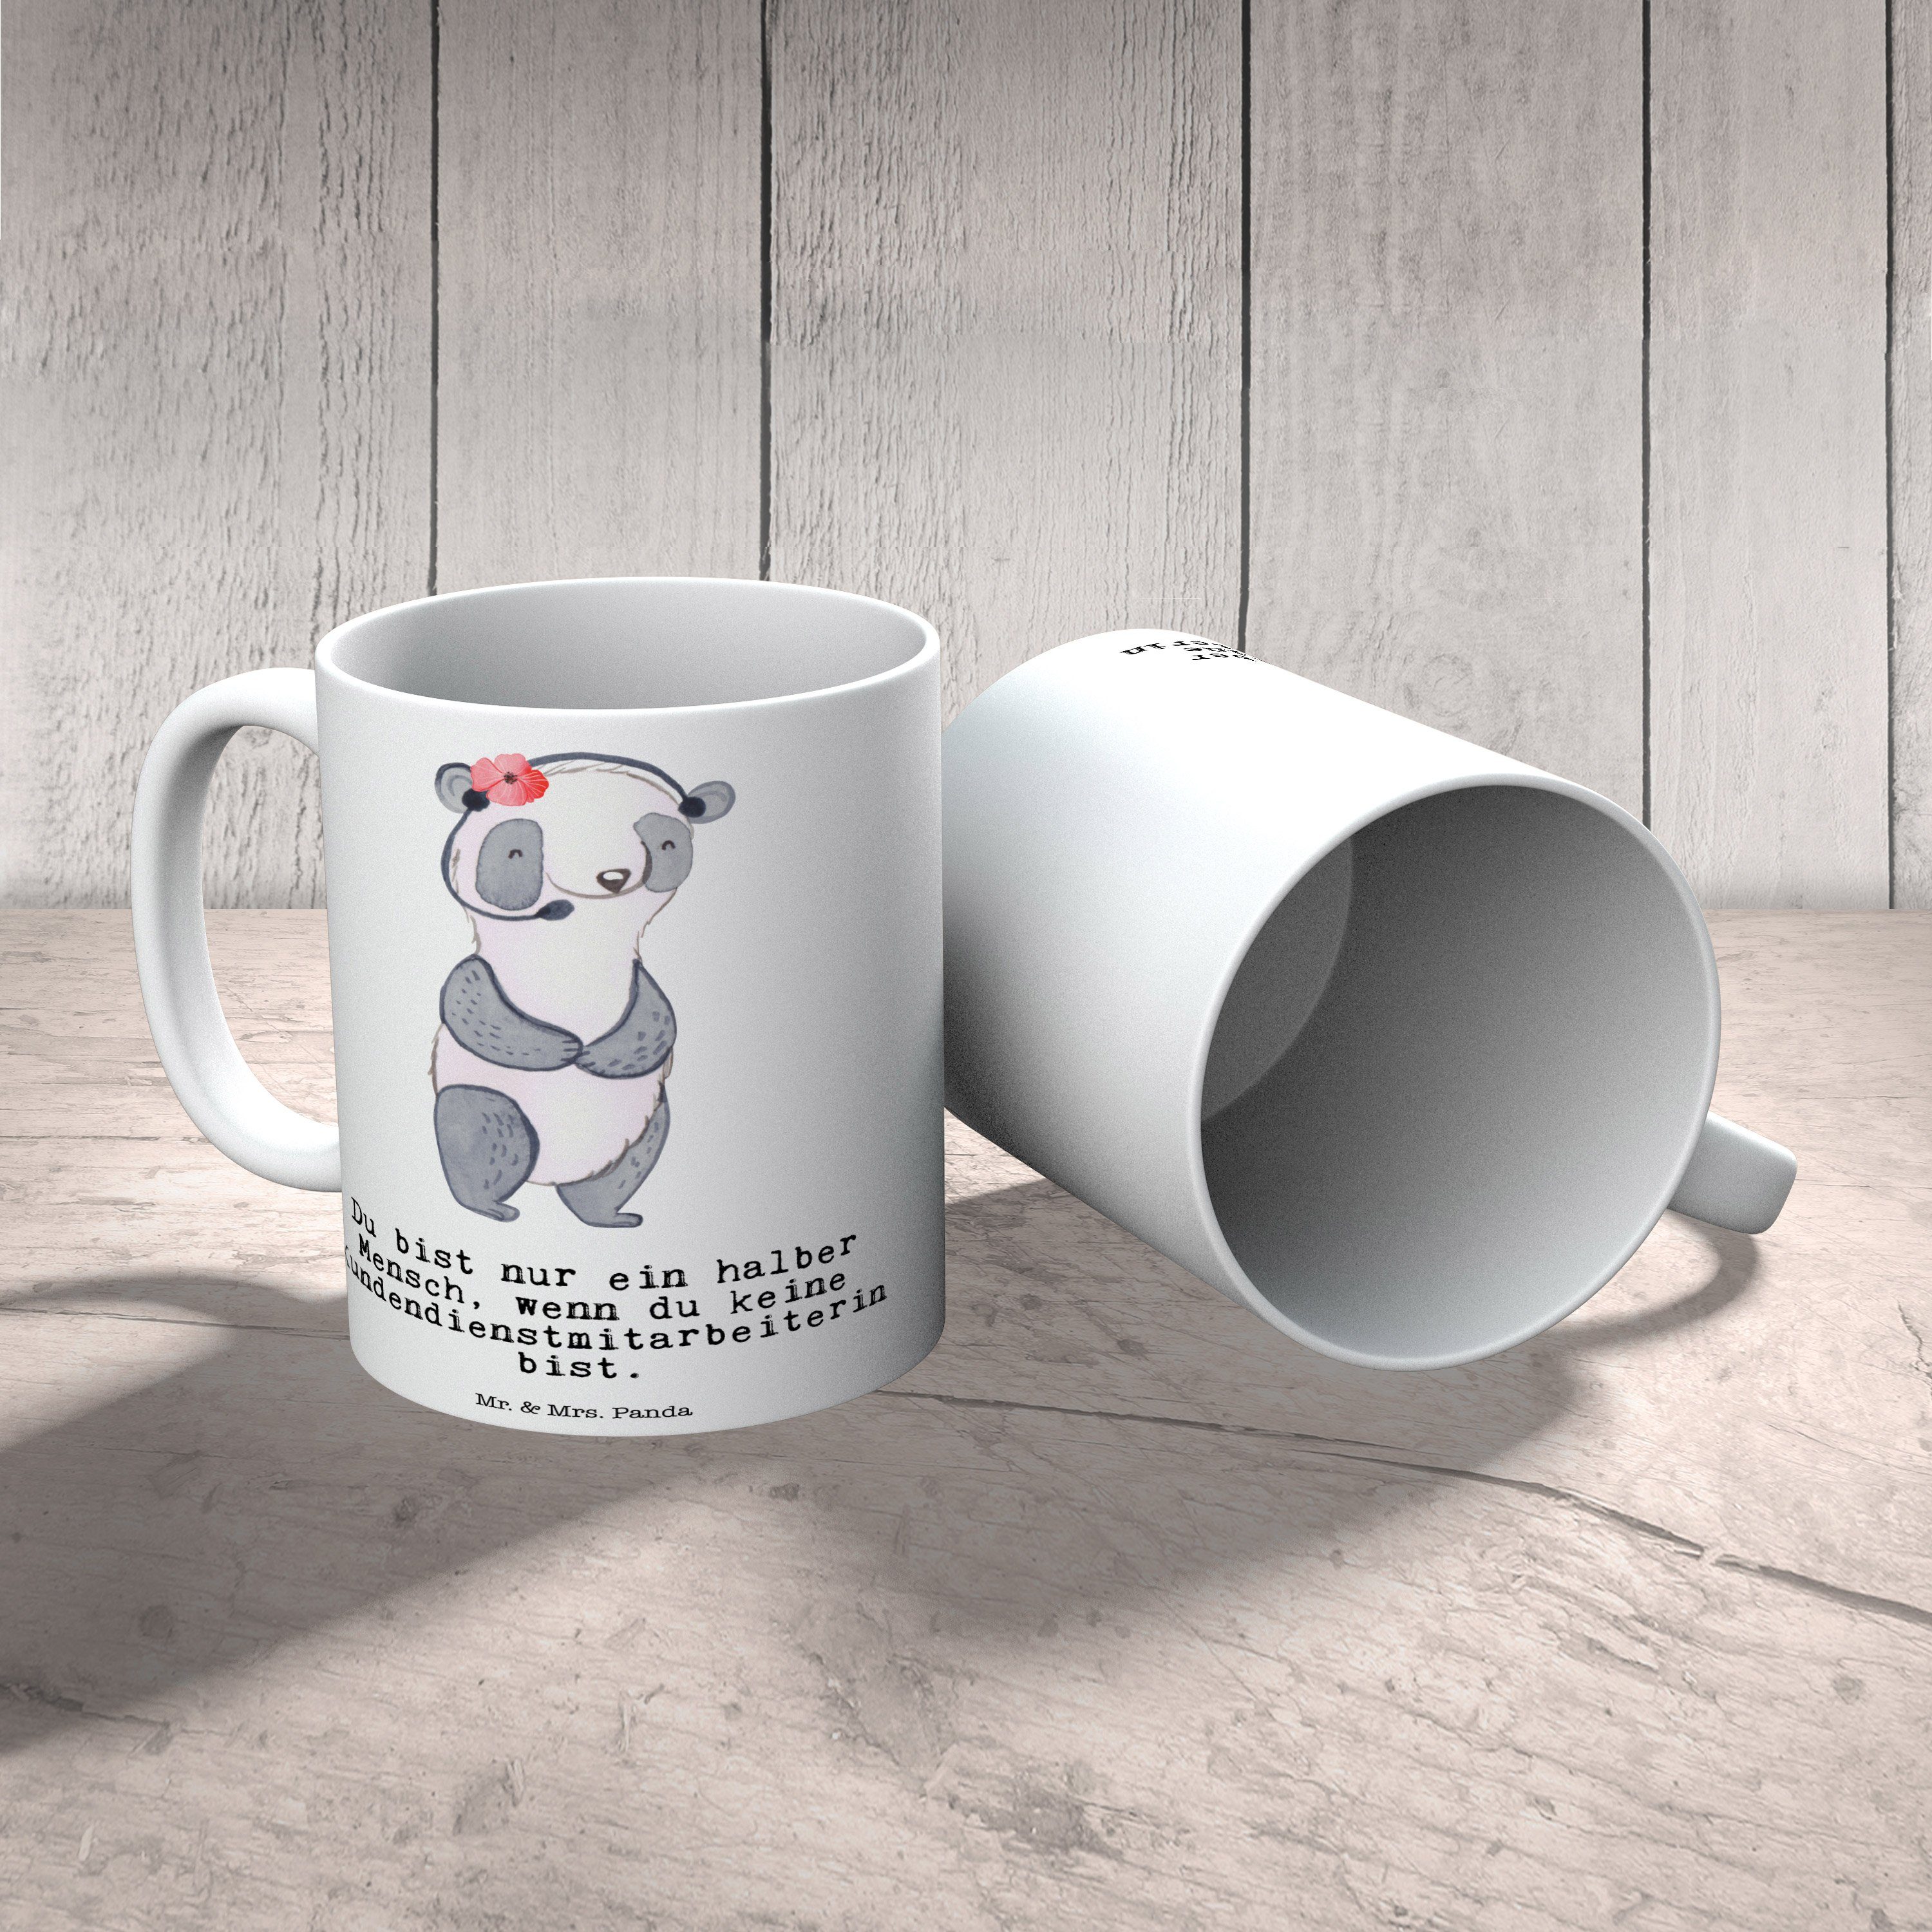 Mr. & Mrs. Panda - Keram, mit Kundendienstmitarbeiterin Herz Tasse Weiß - Geschenk, Keramik Teetasse